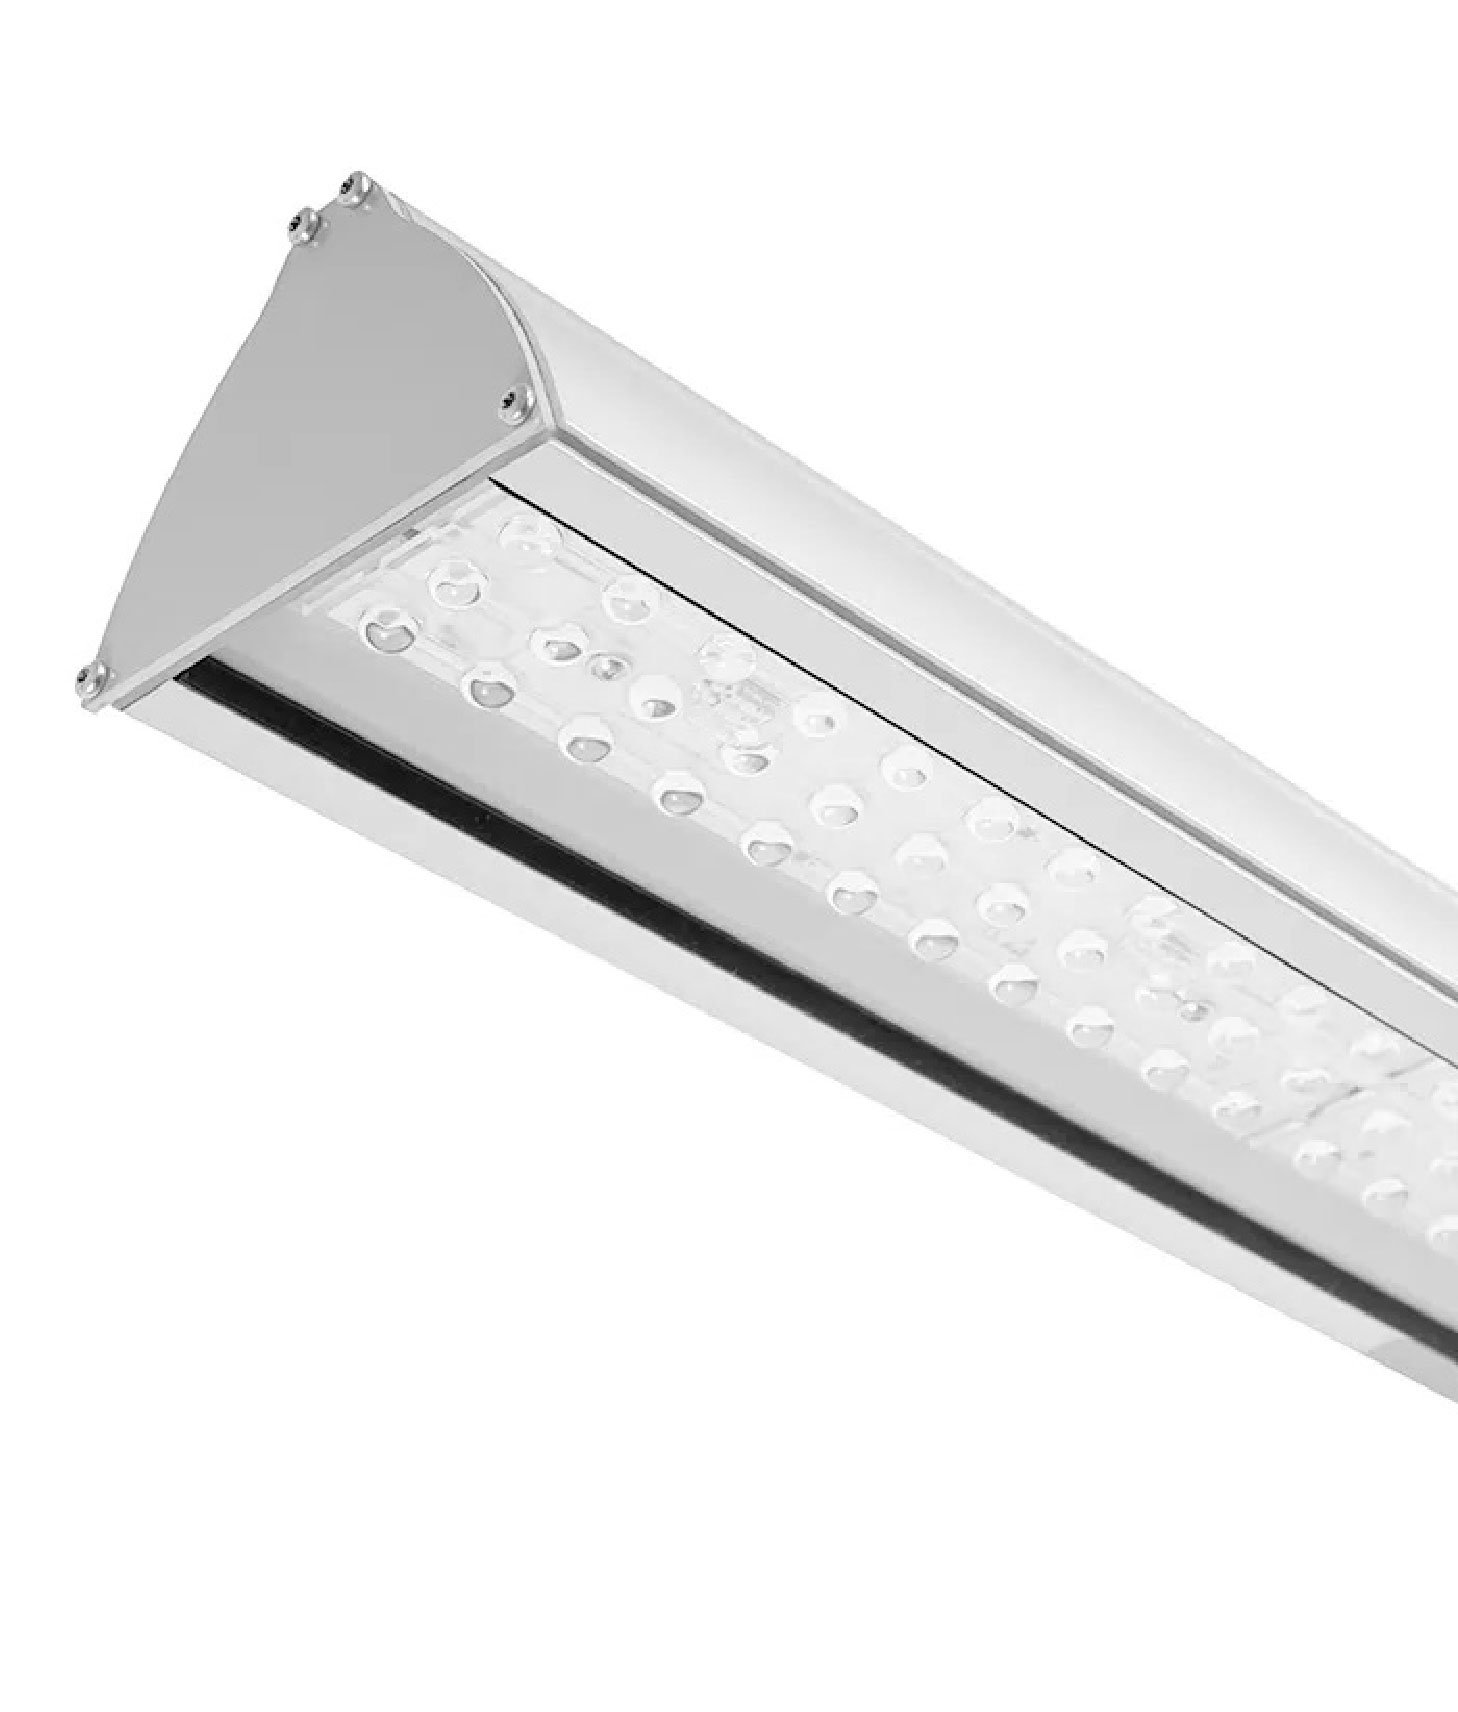 Oprawy LED - sposoby na oszczędzanie energii w przemyśle.